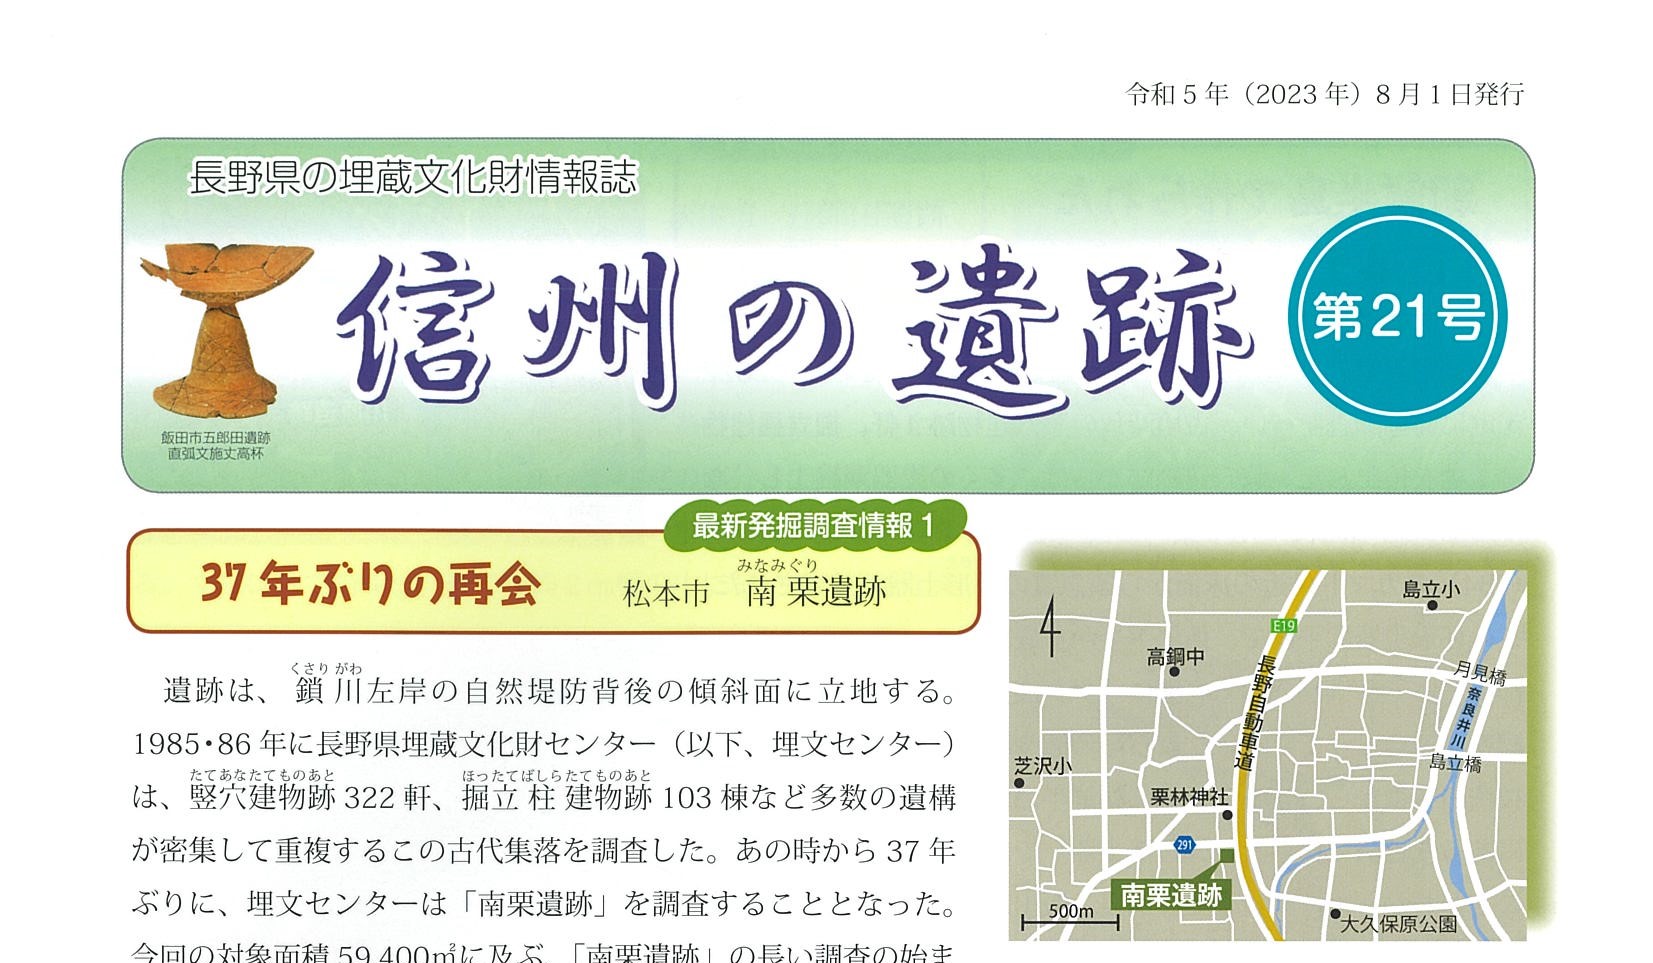 長野県の埋蔵文化財情報誌『信州の遺跡』21号を発行しました。